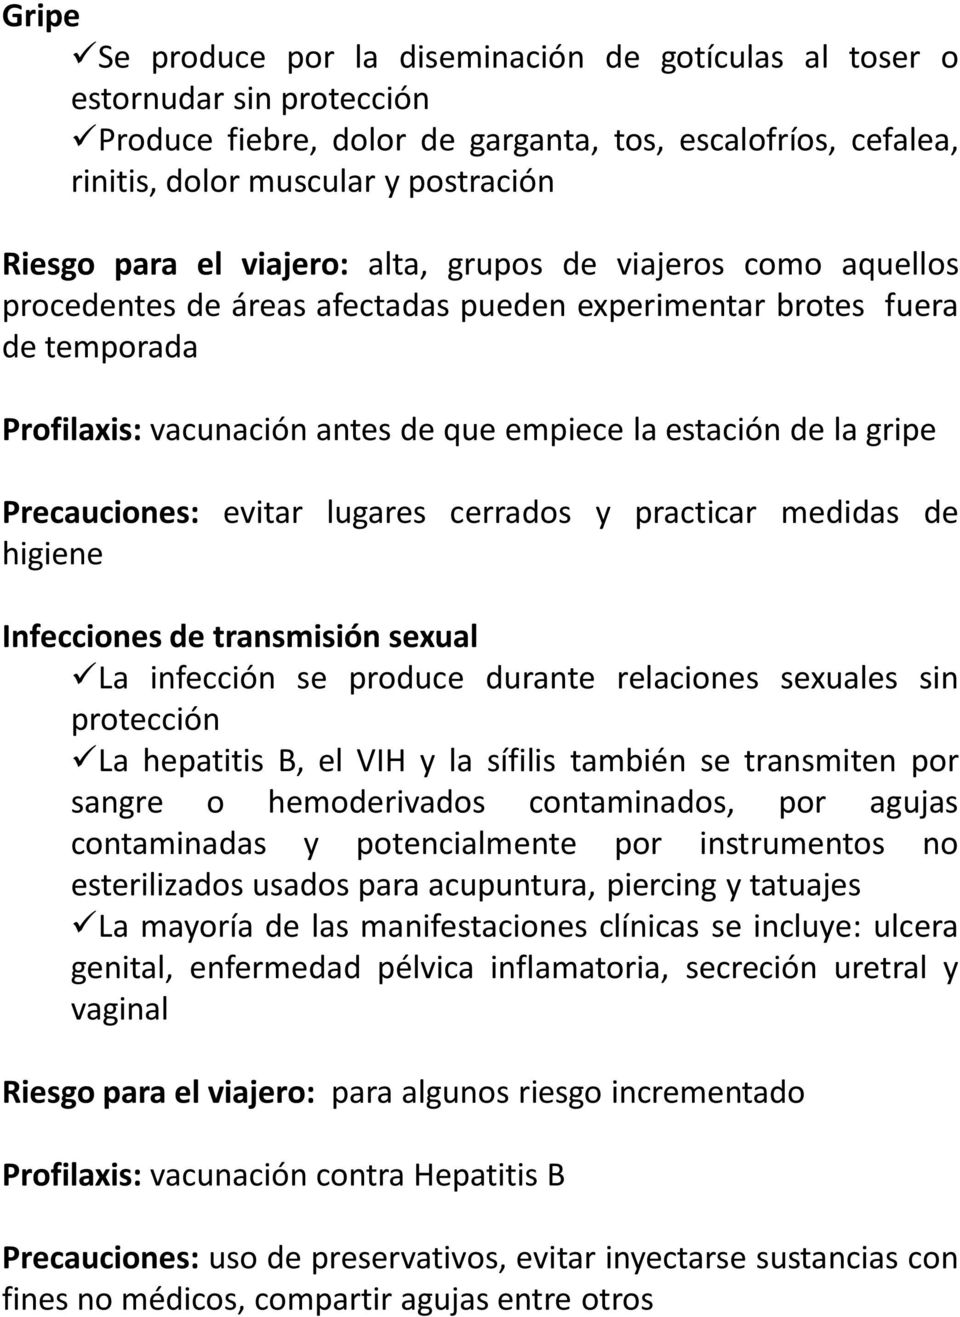 Precauciones: evitar lugares cerrados y practicar medidas de higiene Infecciones de transmisión sexual La infección se produce durante relaciones sexuales sin protección La hepatitis B, el VIH y la